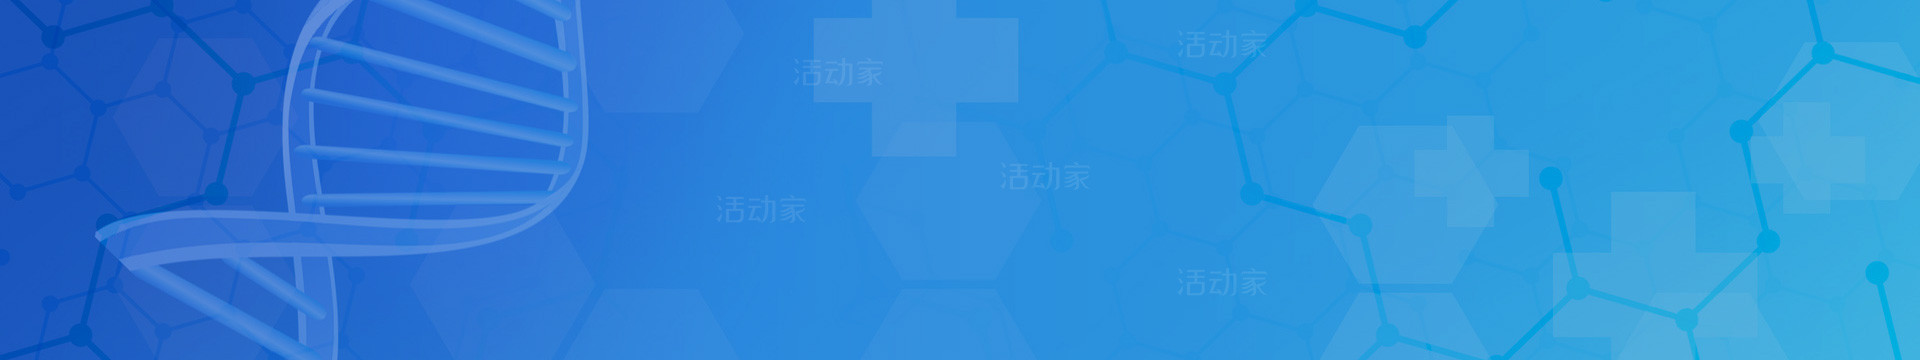 2022中国健康医院大会暨健康医院建设、信息技术和产品展览会